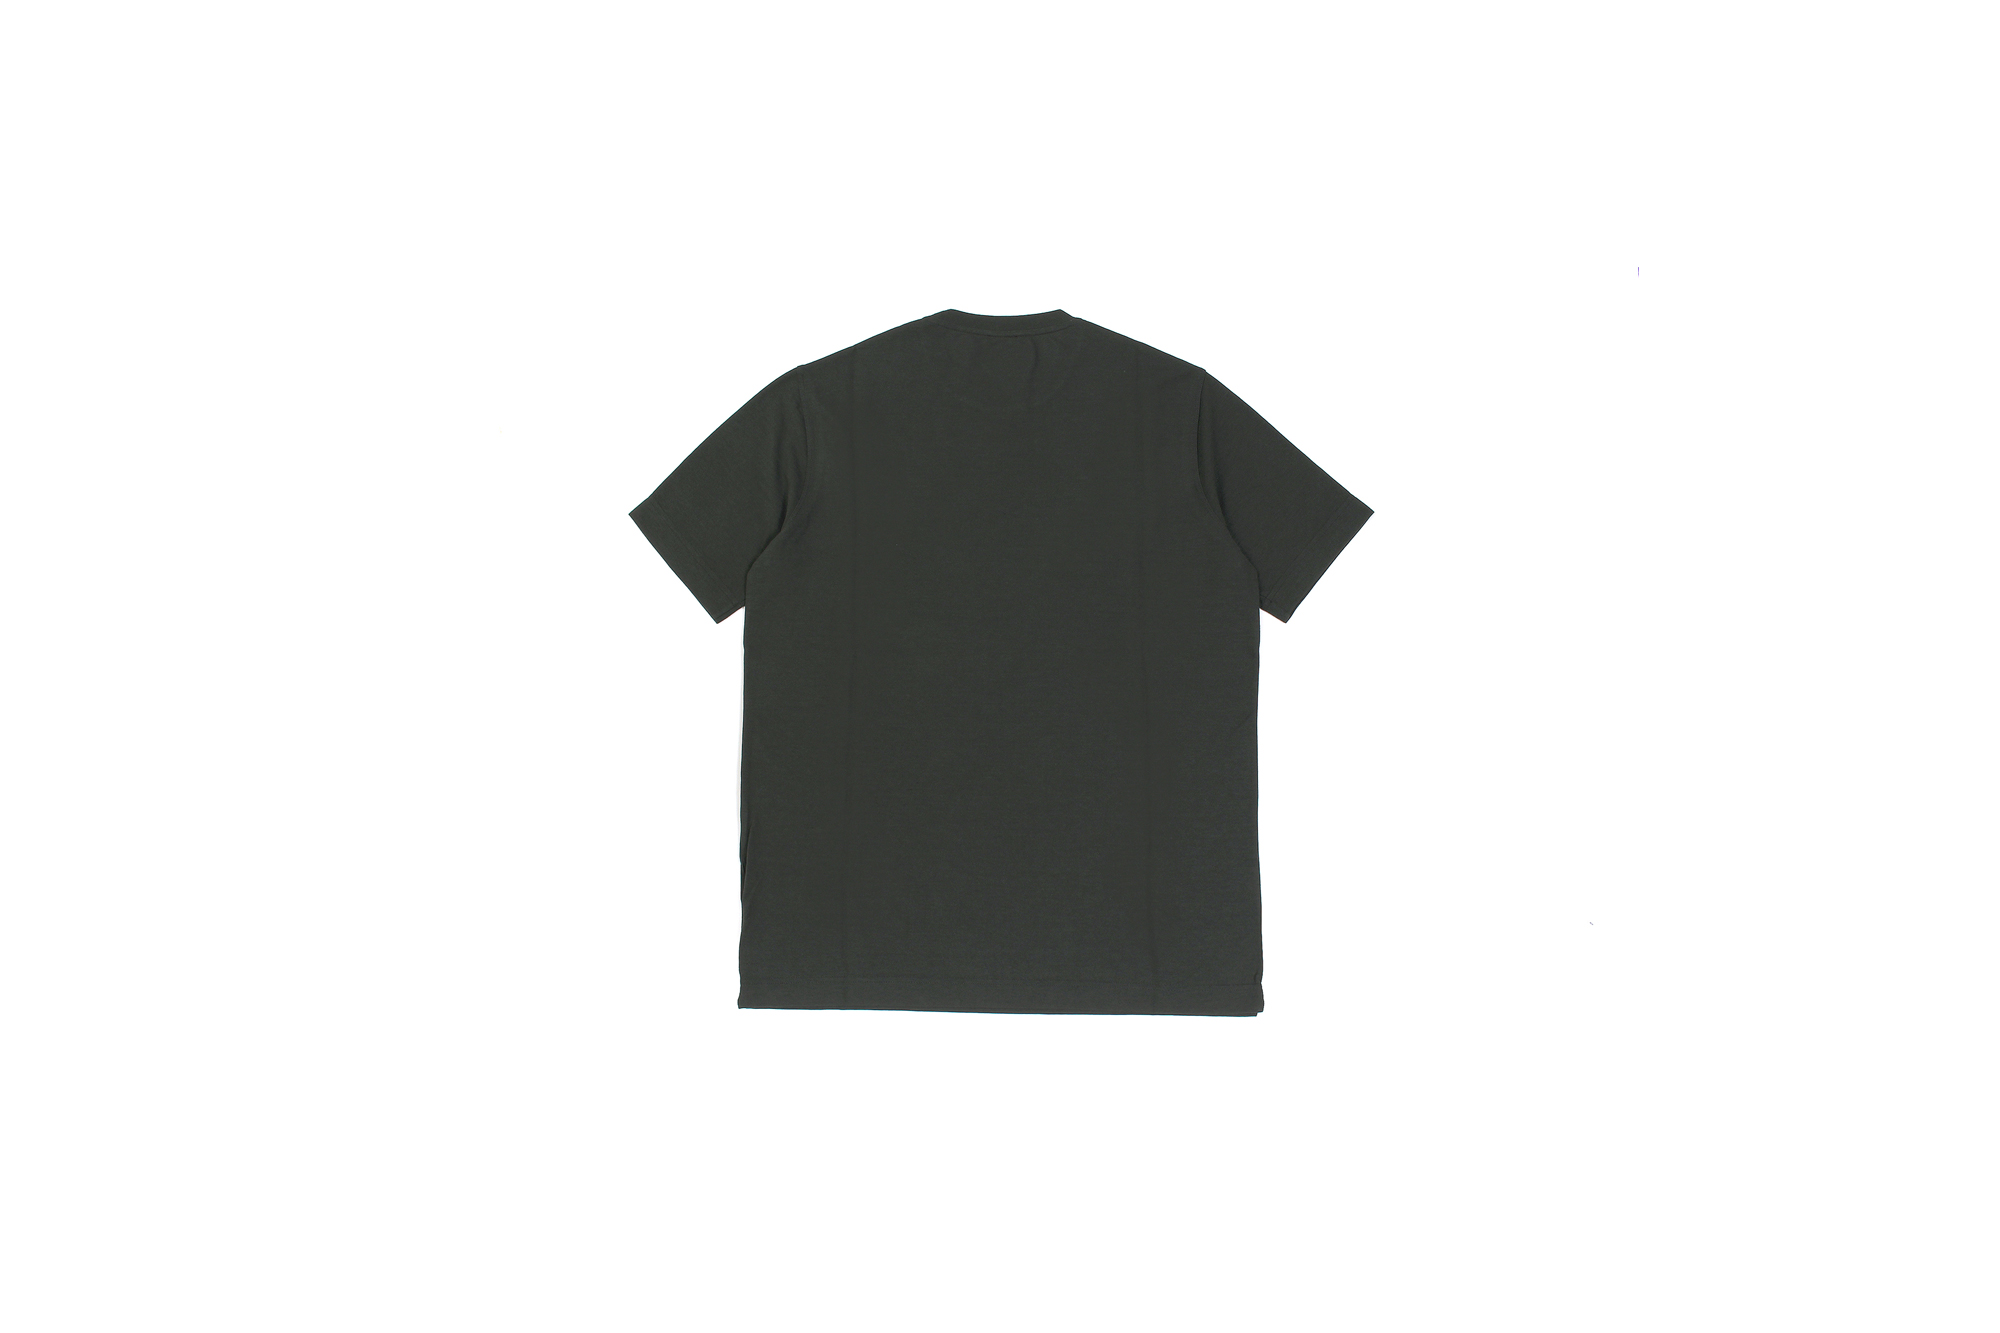 ZANONE(ザノーネ) Crew Neck T-shirt (クルーネックTシャツ) ice cotton アイスコットン Tシャツ OLIVE (オリーブ・Z0049) MADE IN ITALY(イタリア製) 2020 春夏 【ご予約開始】愛知 名古屋 altoediritto アルトエデリット tee 夏Tシャツ